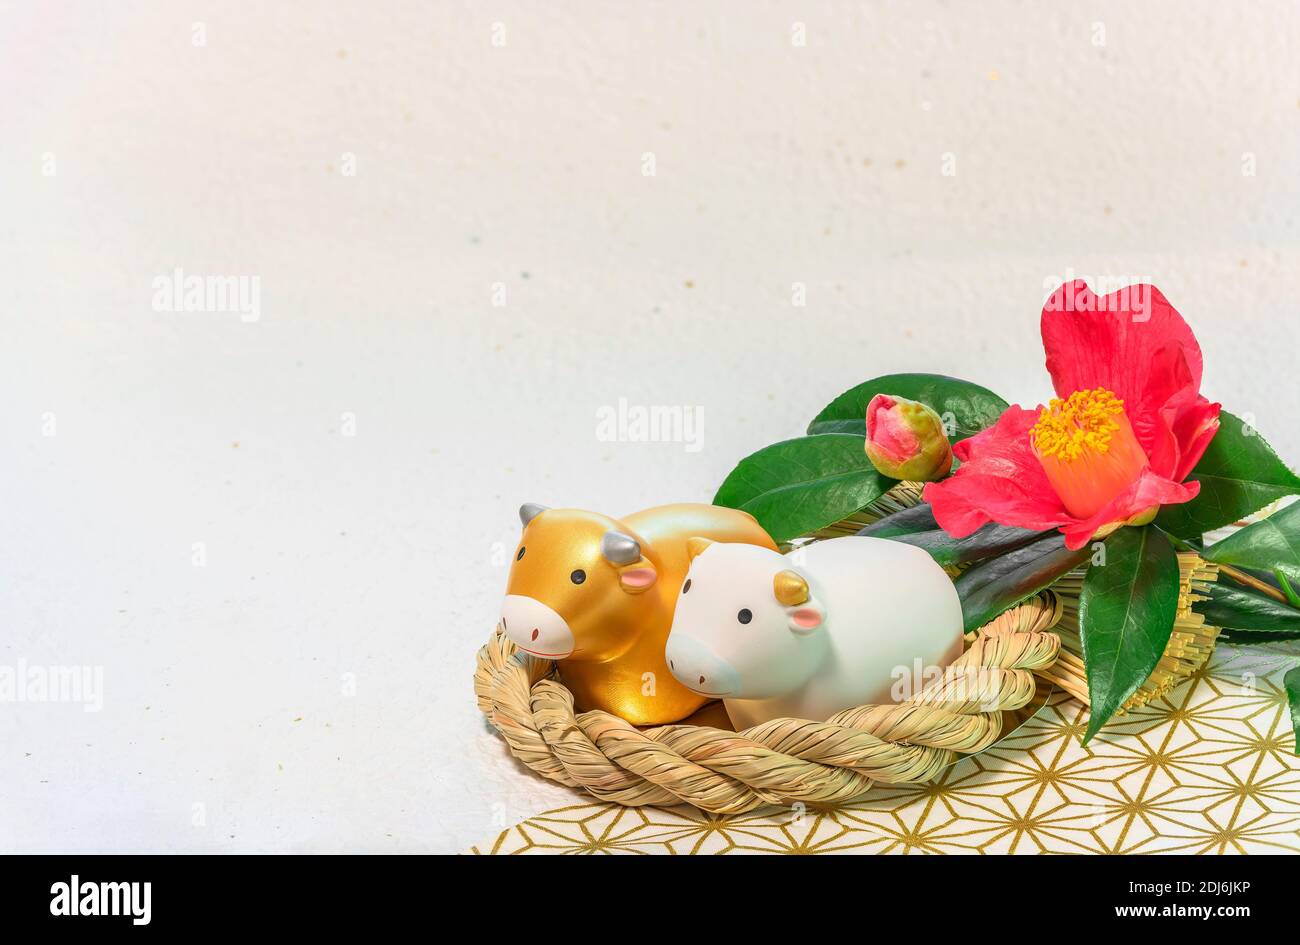 Biglietto d'auguri giapponese con un fiore Tsubaki chiamato l'inverno Rosa e due animali zodiacali figurine di mucche in A. Ornamento di paglia per l'anno del Foto Stock